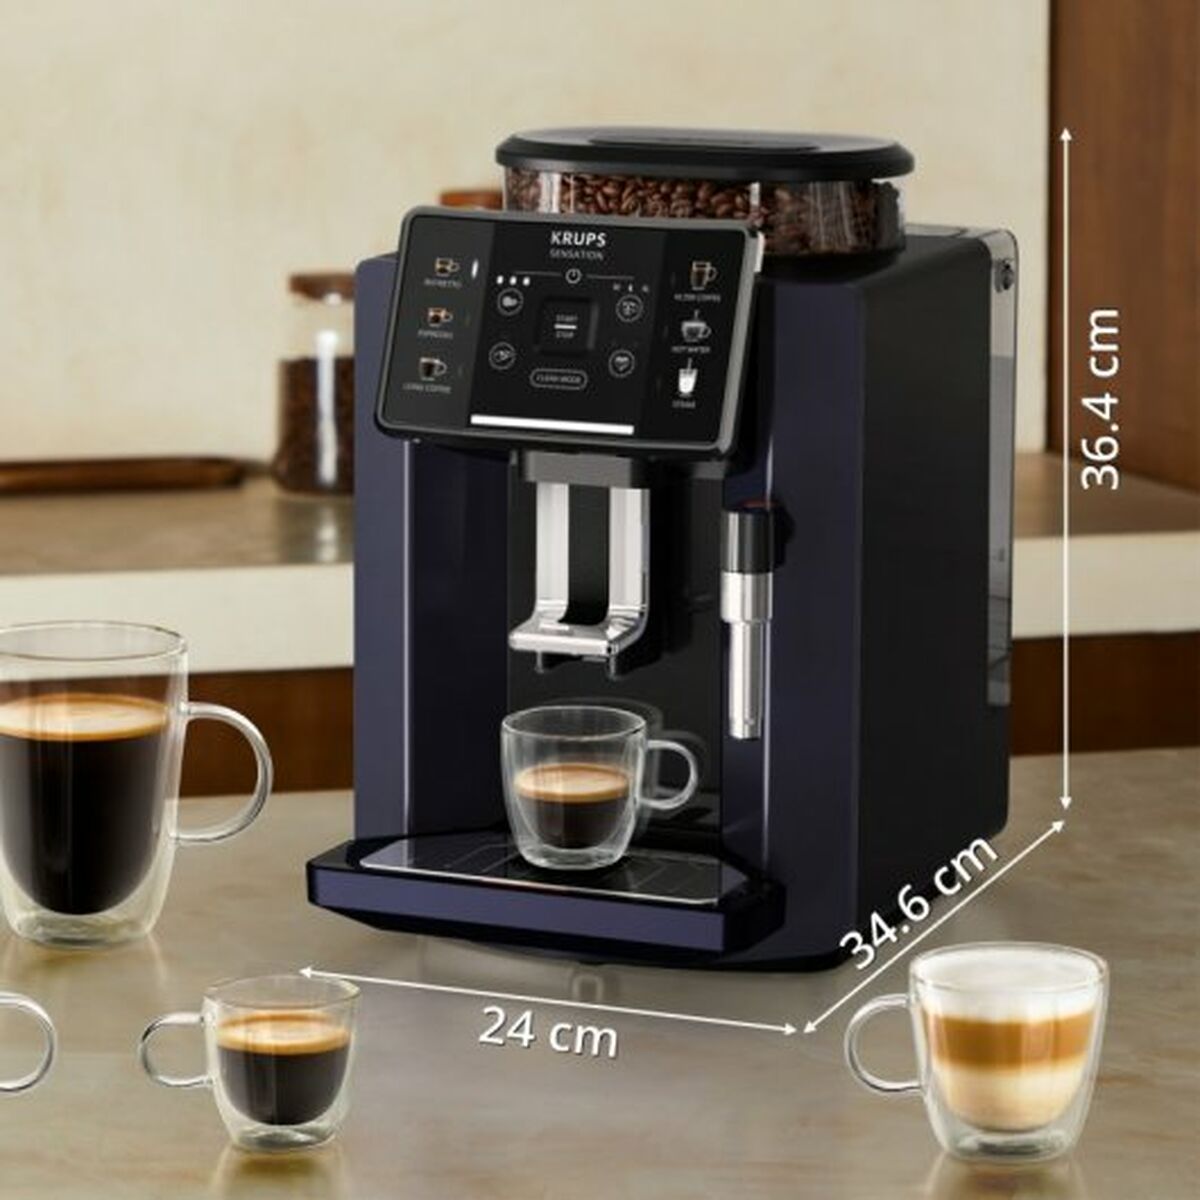 Superautomatisch koffiezetapparaat Krups Sensation C50 15 bar Zwart 1450 W